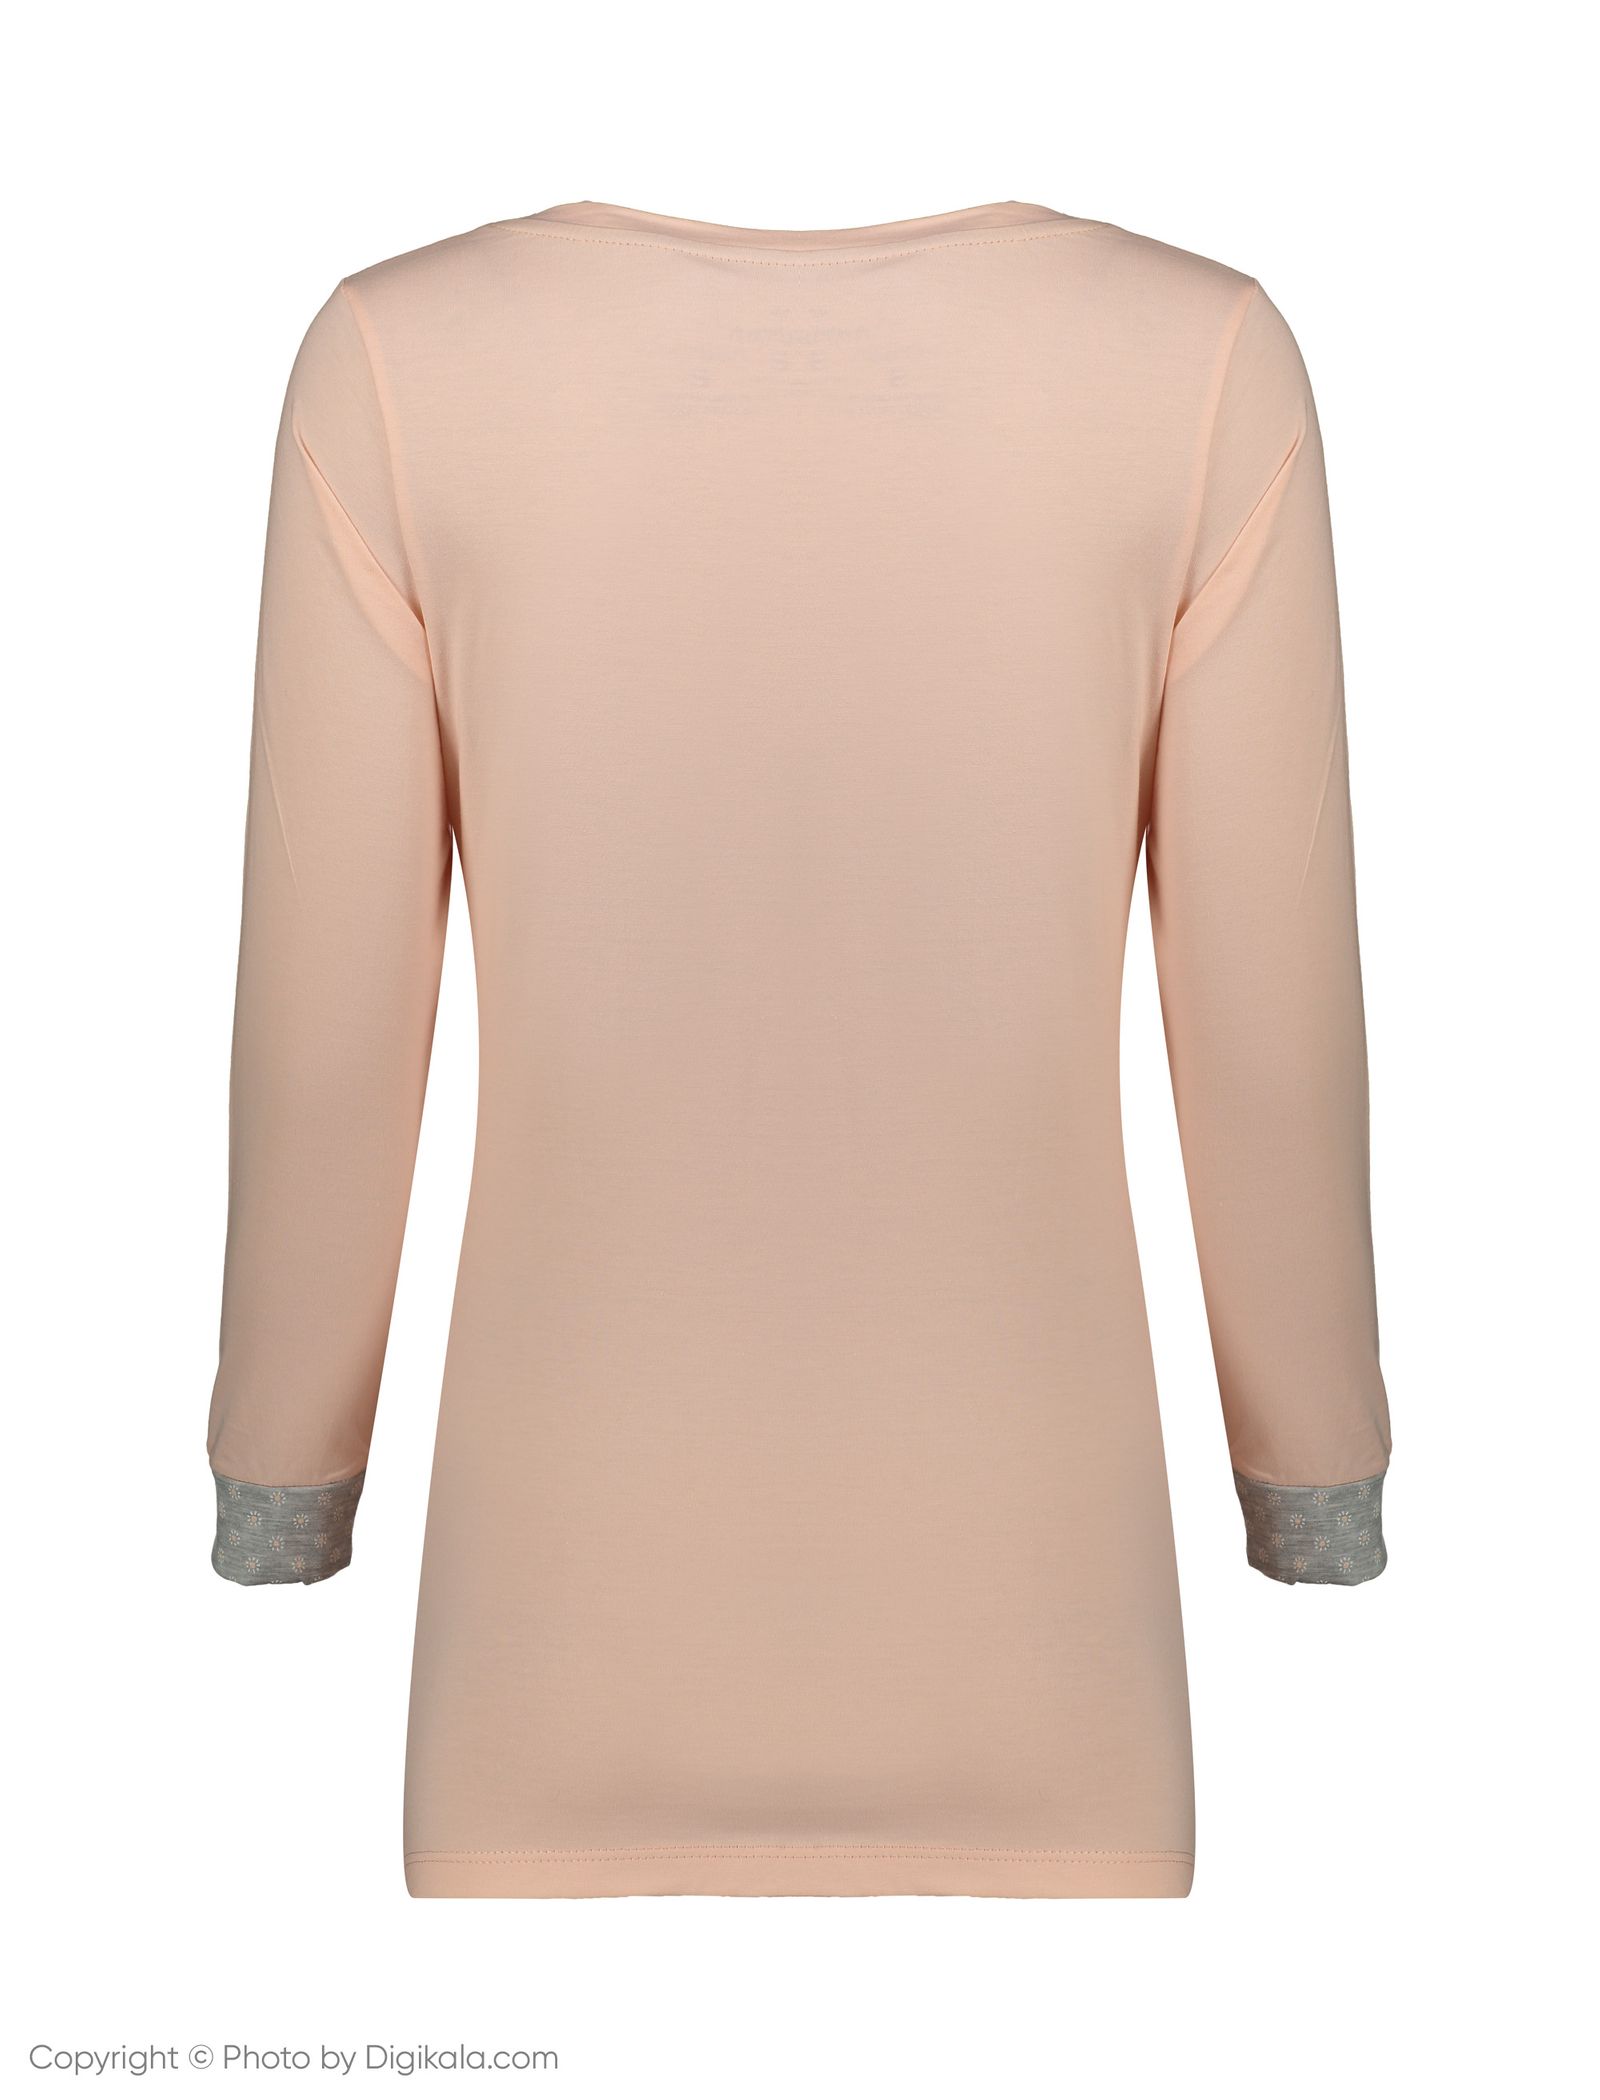 ست تی شرت و شلوار راحتی زنانه ناربن مدل 1521152-21 - سالمون روشن - 5